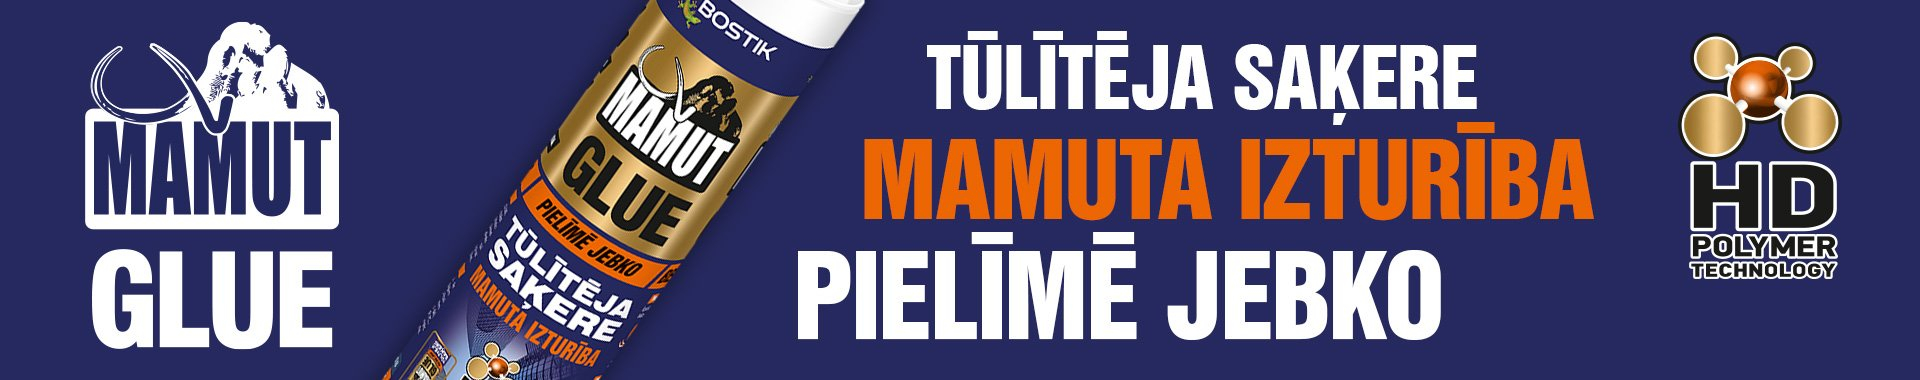 Bostik DIY Latvia Mamut Glue banner image